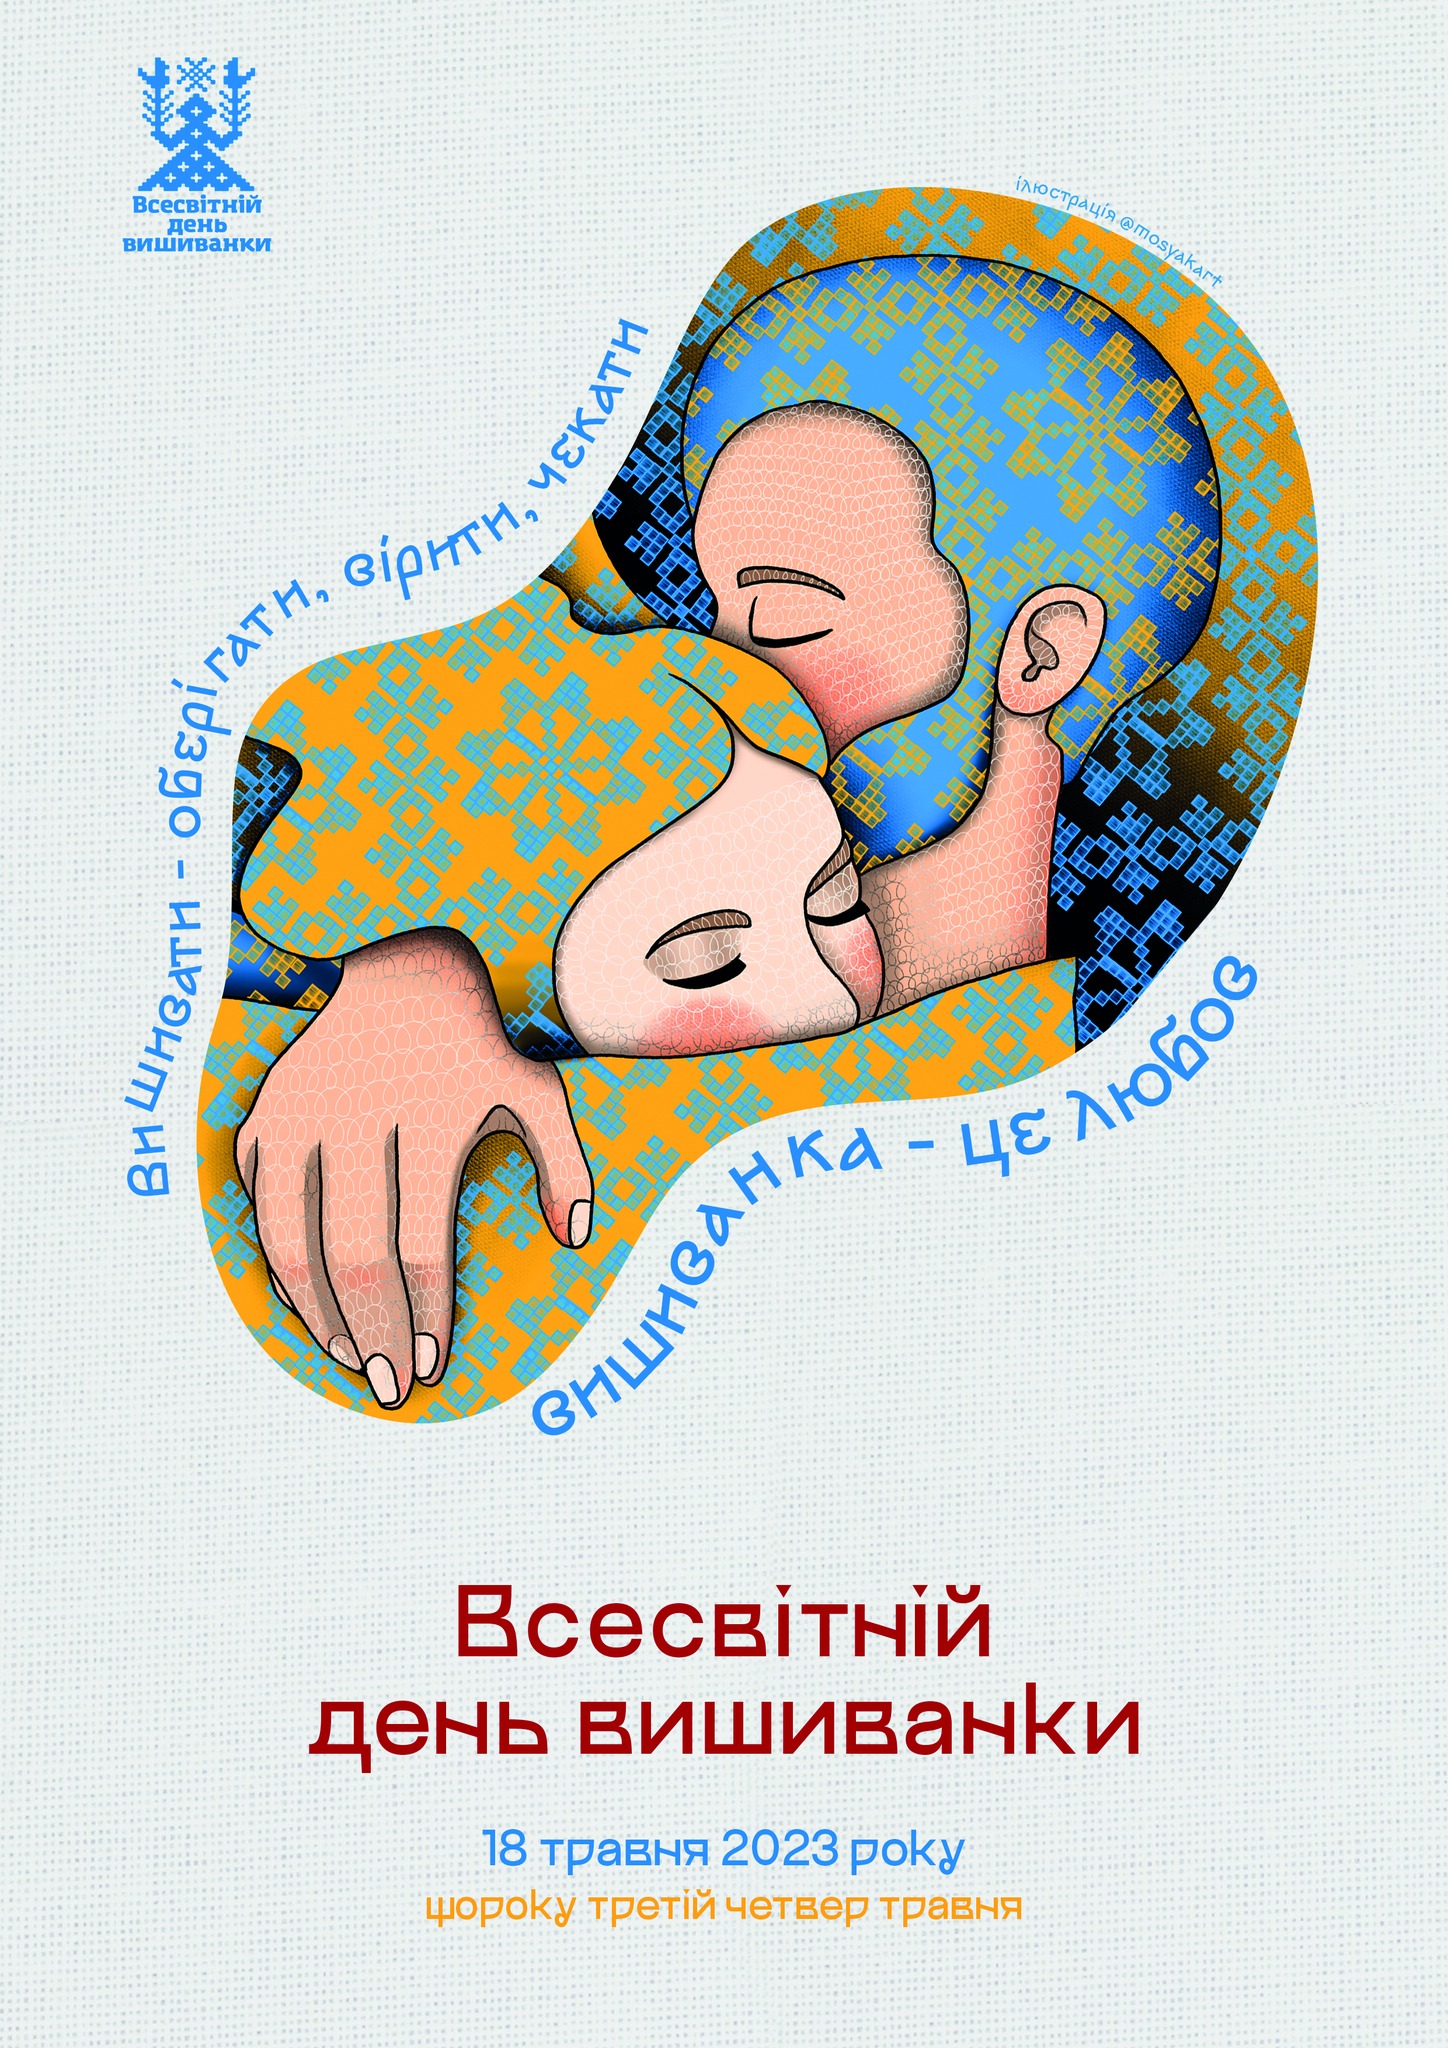 Официальный постер Дня вышиванки-2023. Фото: facebook.com/lesiavoroniuk/